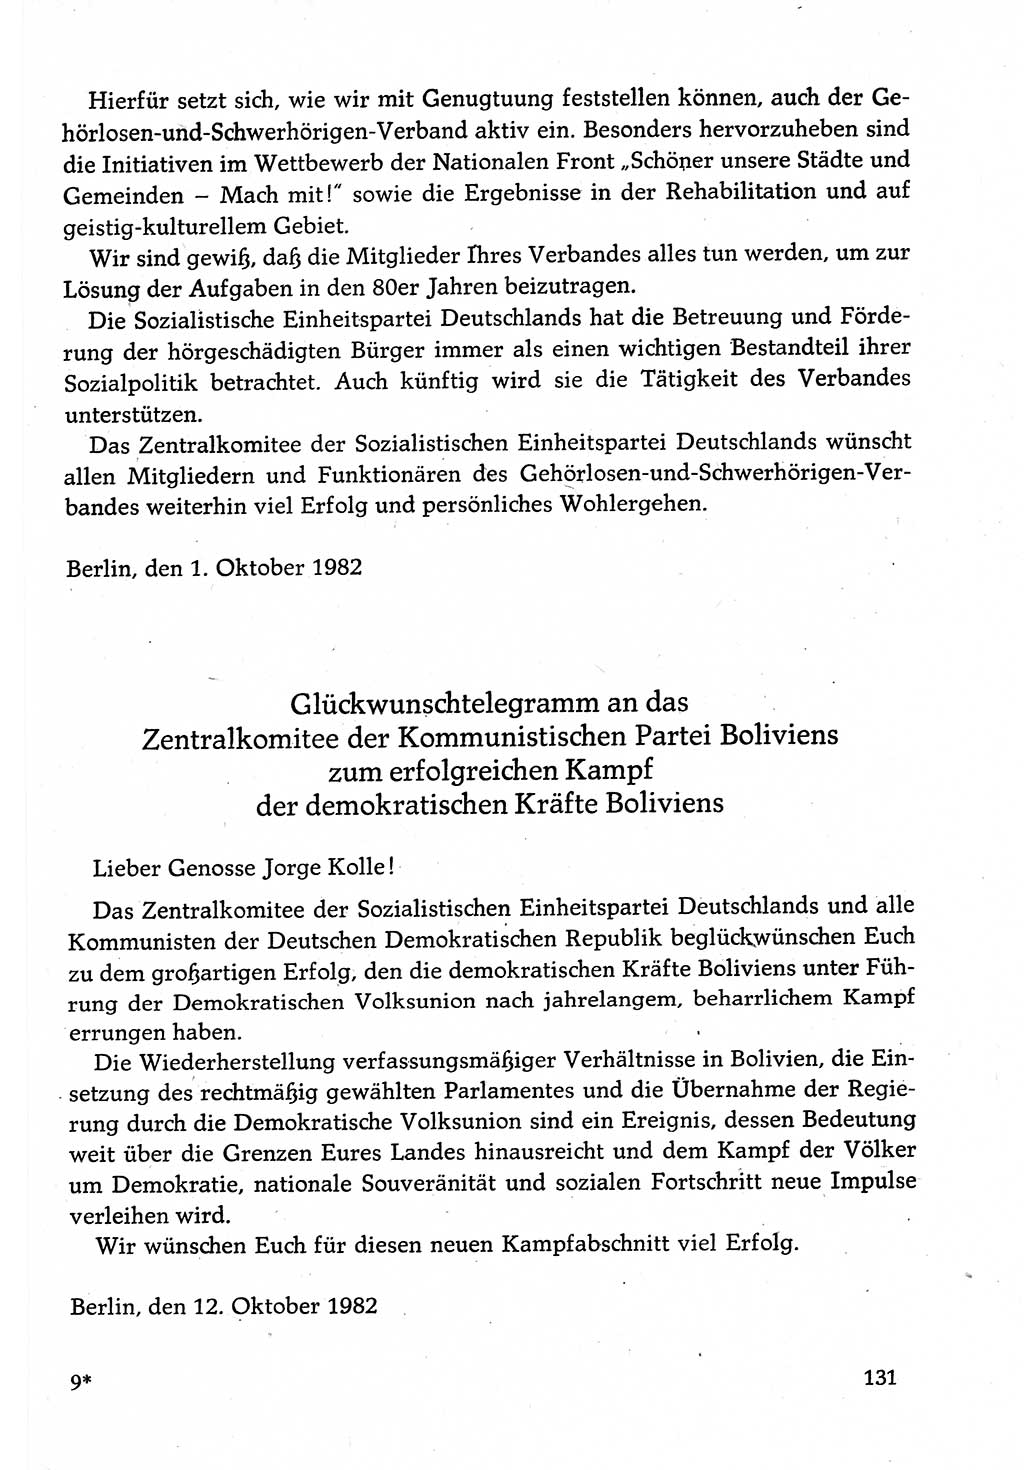 Dokumente der Sozialistischen Einheitspartei Deutschlands (SED) [Deutsche Demokratische Republik (DDR)] 1982-1983, Seite 131 (Dok. SED DDR 1982-1983, S. 131)